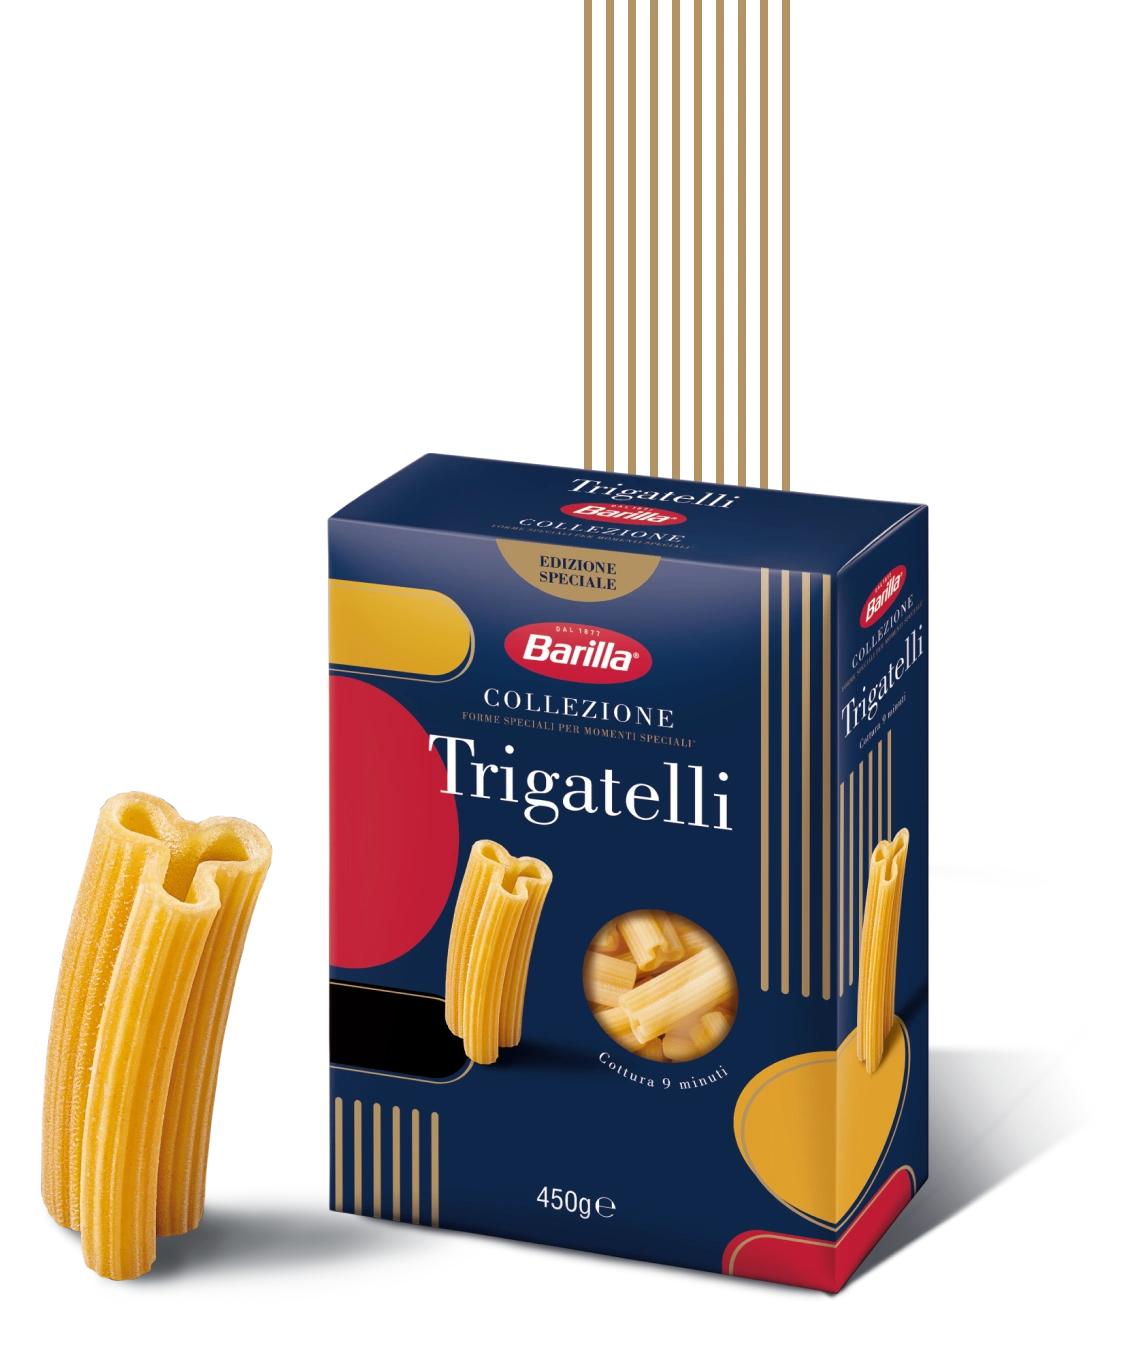 New Trigatelli box and twirly pasta shape